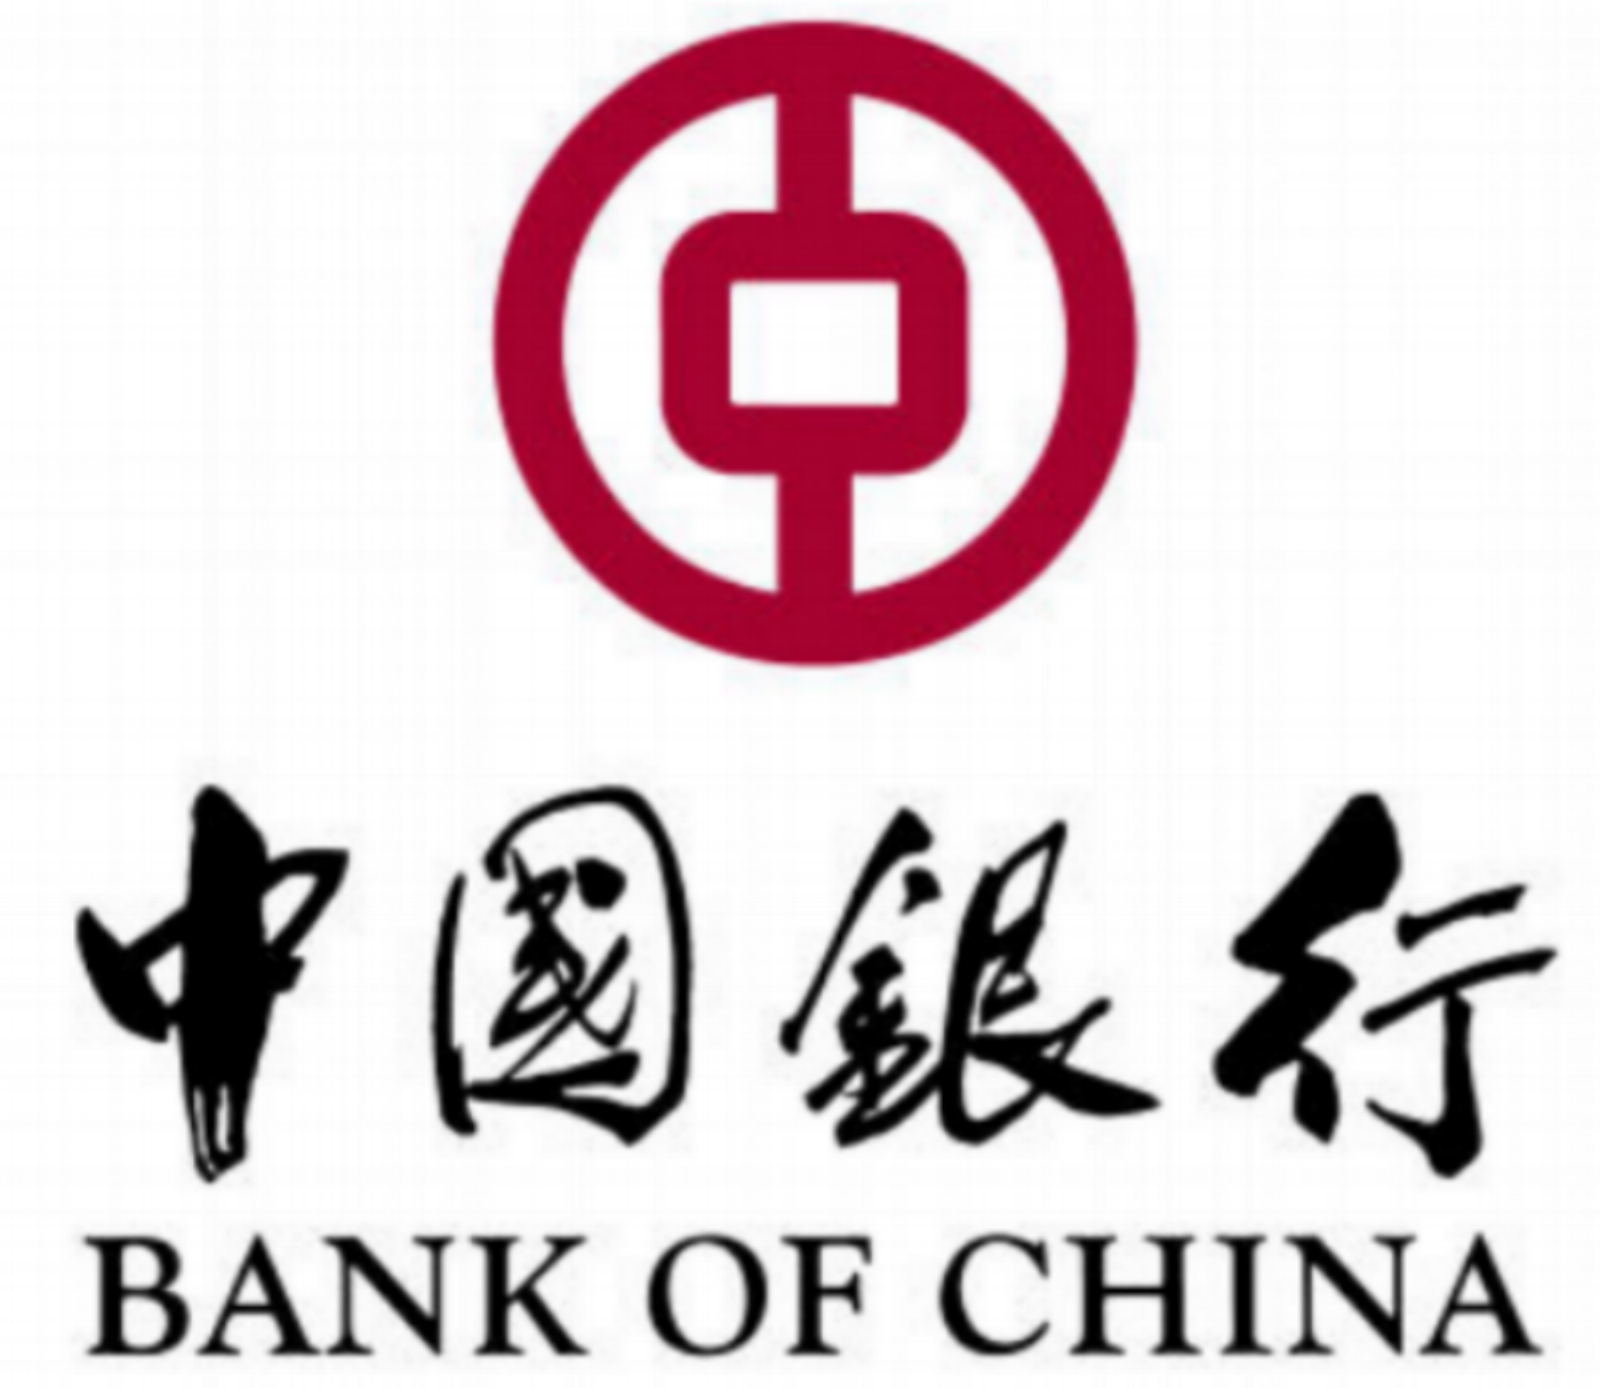 BankofChina.png